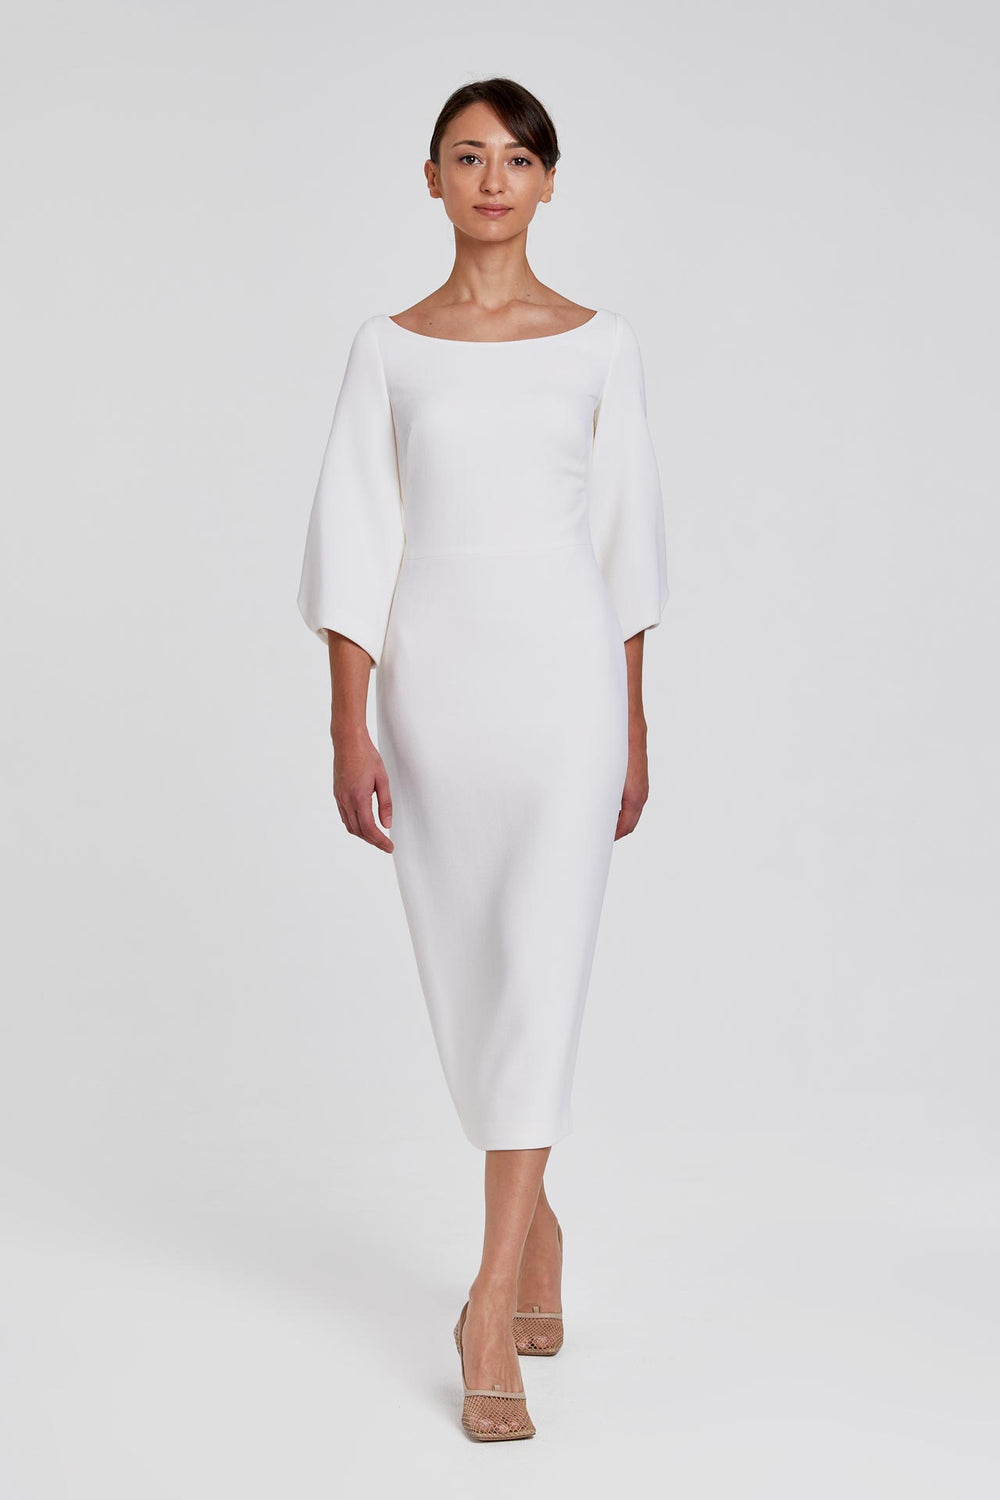 Aalto Dress White